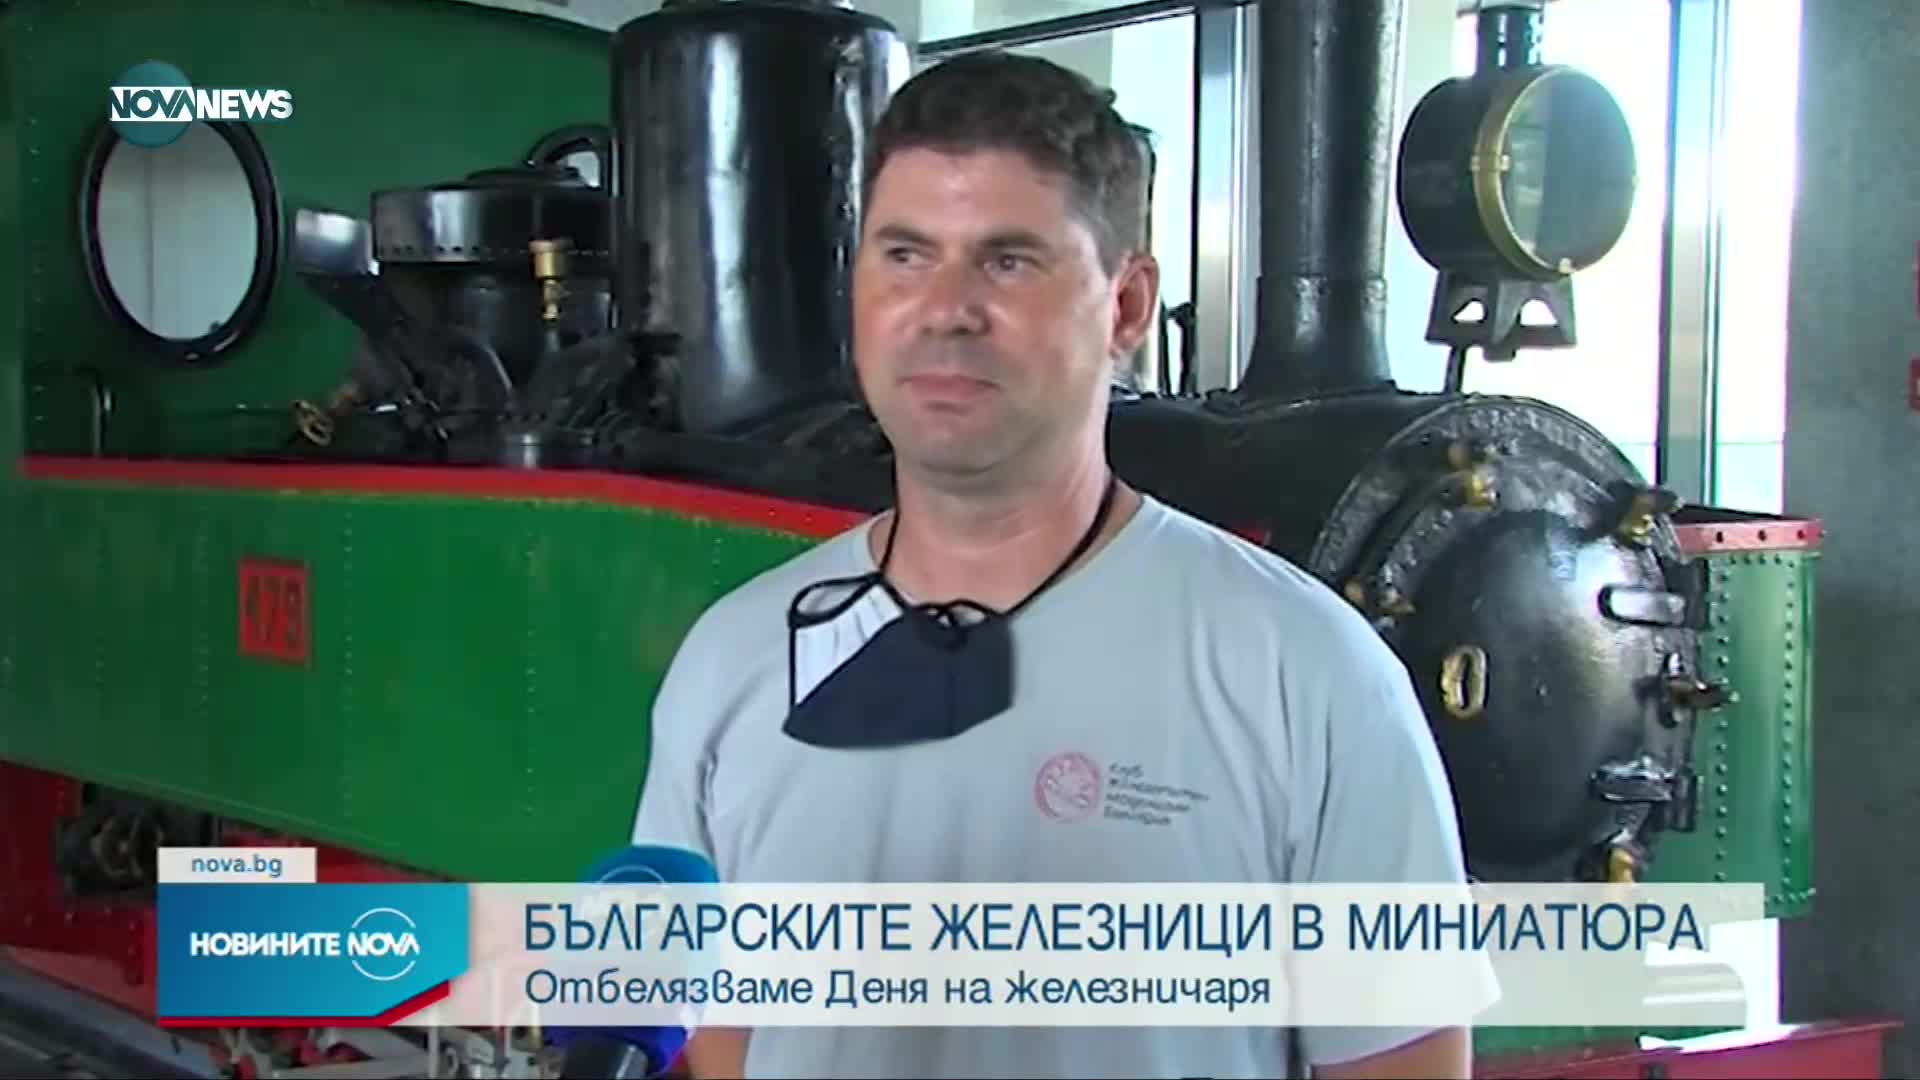 Представиха българските железници в миниатюра за Деня на железничаря